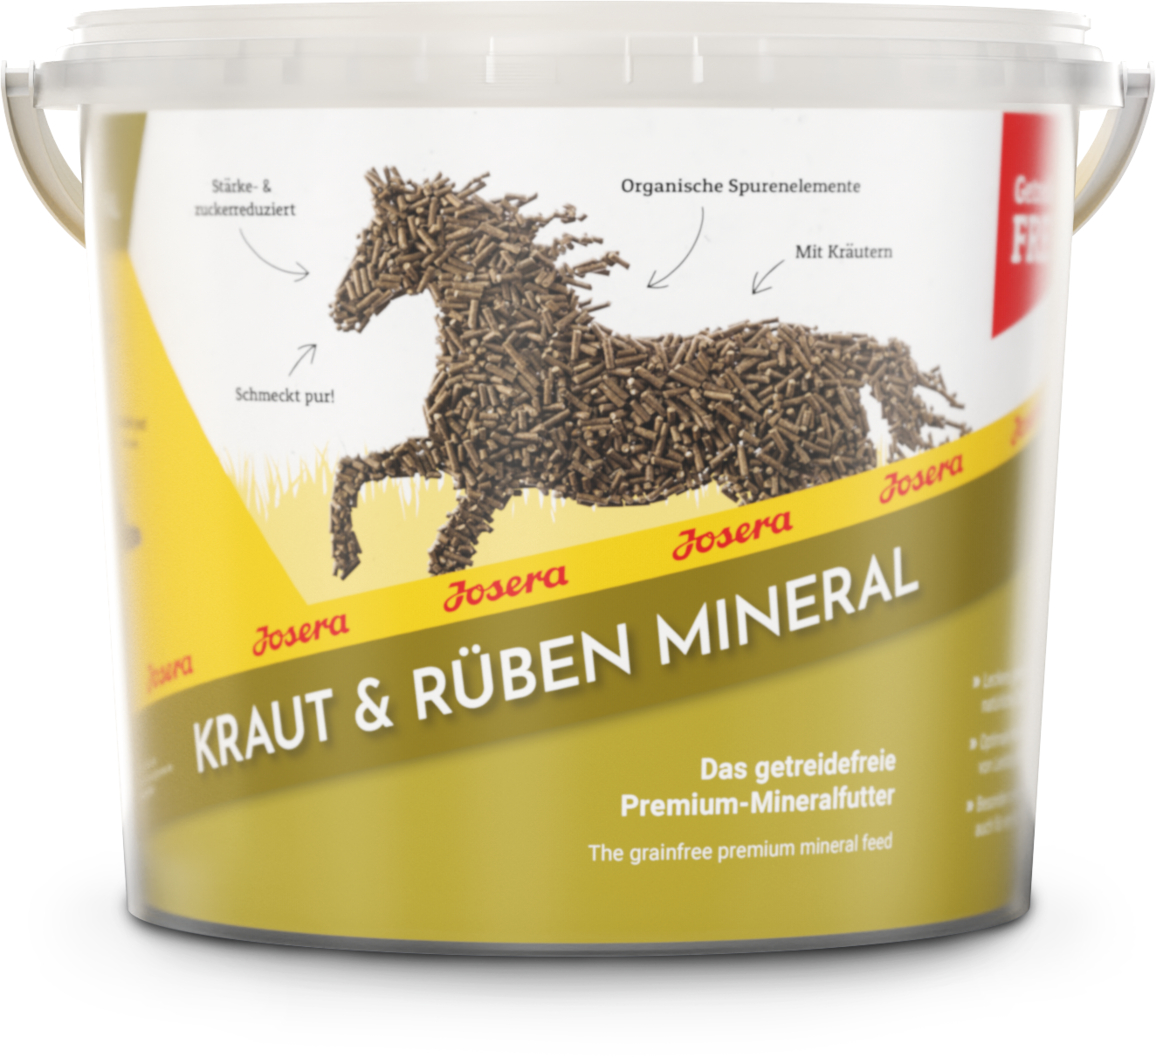 Josera Kraut & Rüben Mineral - Das getreidefreie Premium-Mineralfutter 4kg